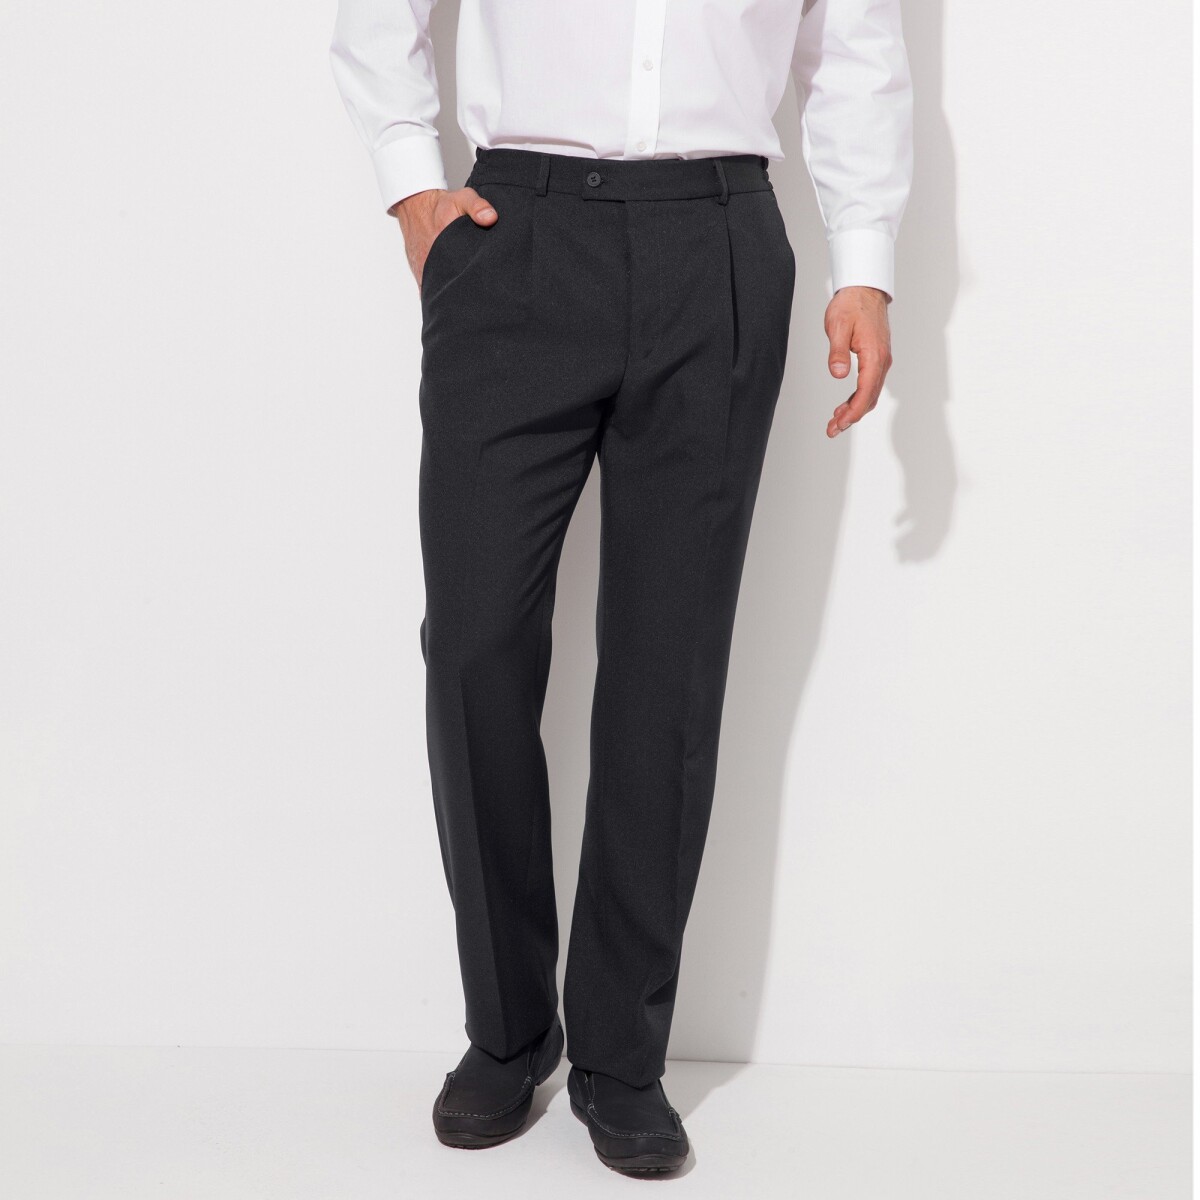 Blancheporte Kalhoty s pružným pasem, polyestervlna šedá antracitová 42